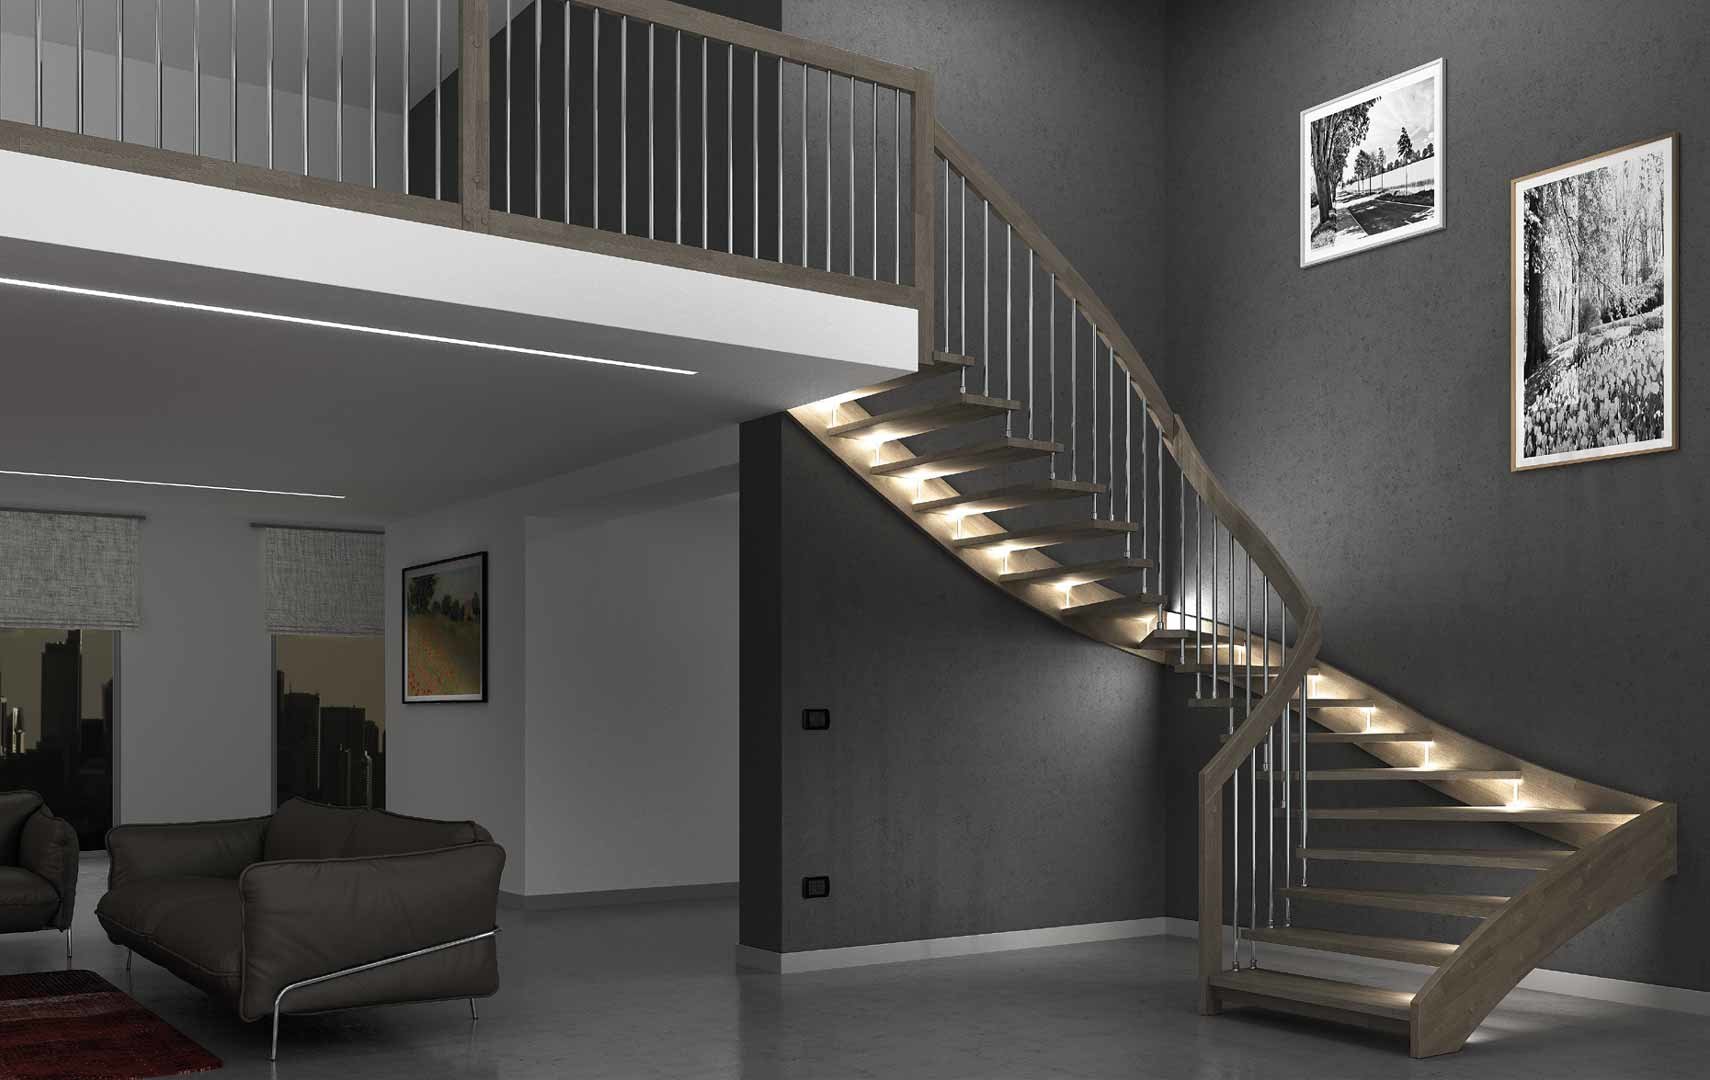 ᐅ Maisons élégantes et exclusives avec escaliers d'éclairage LED - Maisons  élégantes et exclusives avec escaliers d'éclairage LED